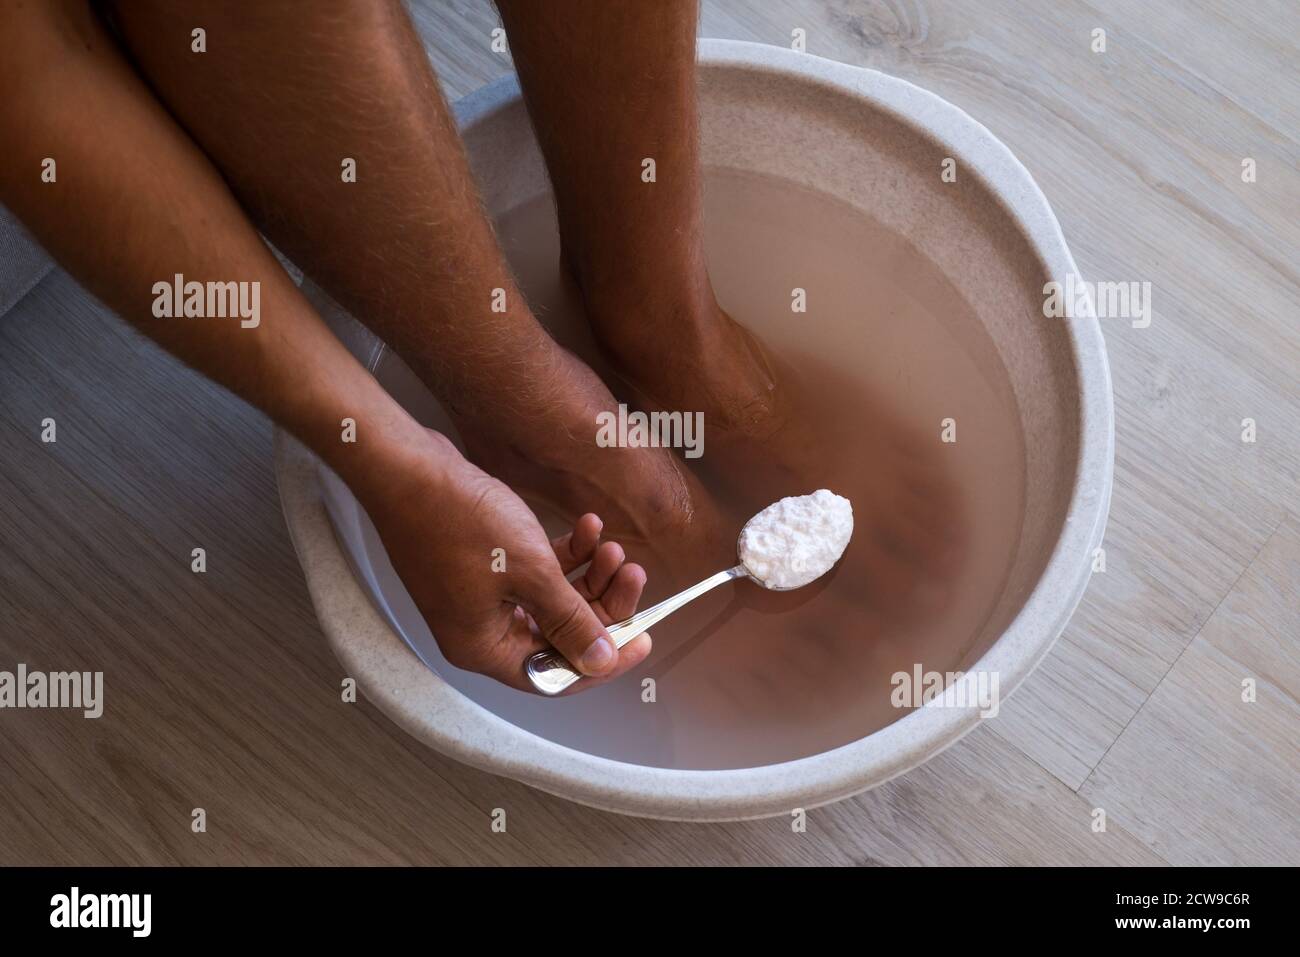 L'homme a mis une cuillère de bicarbonate de soude dans le bain avec de l'eau chaude pour ses pieds. Bain maison pour les pieds secs Banque D'Images